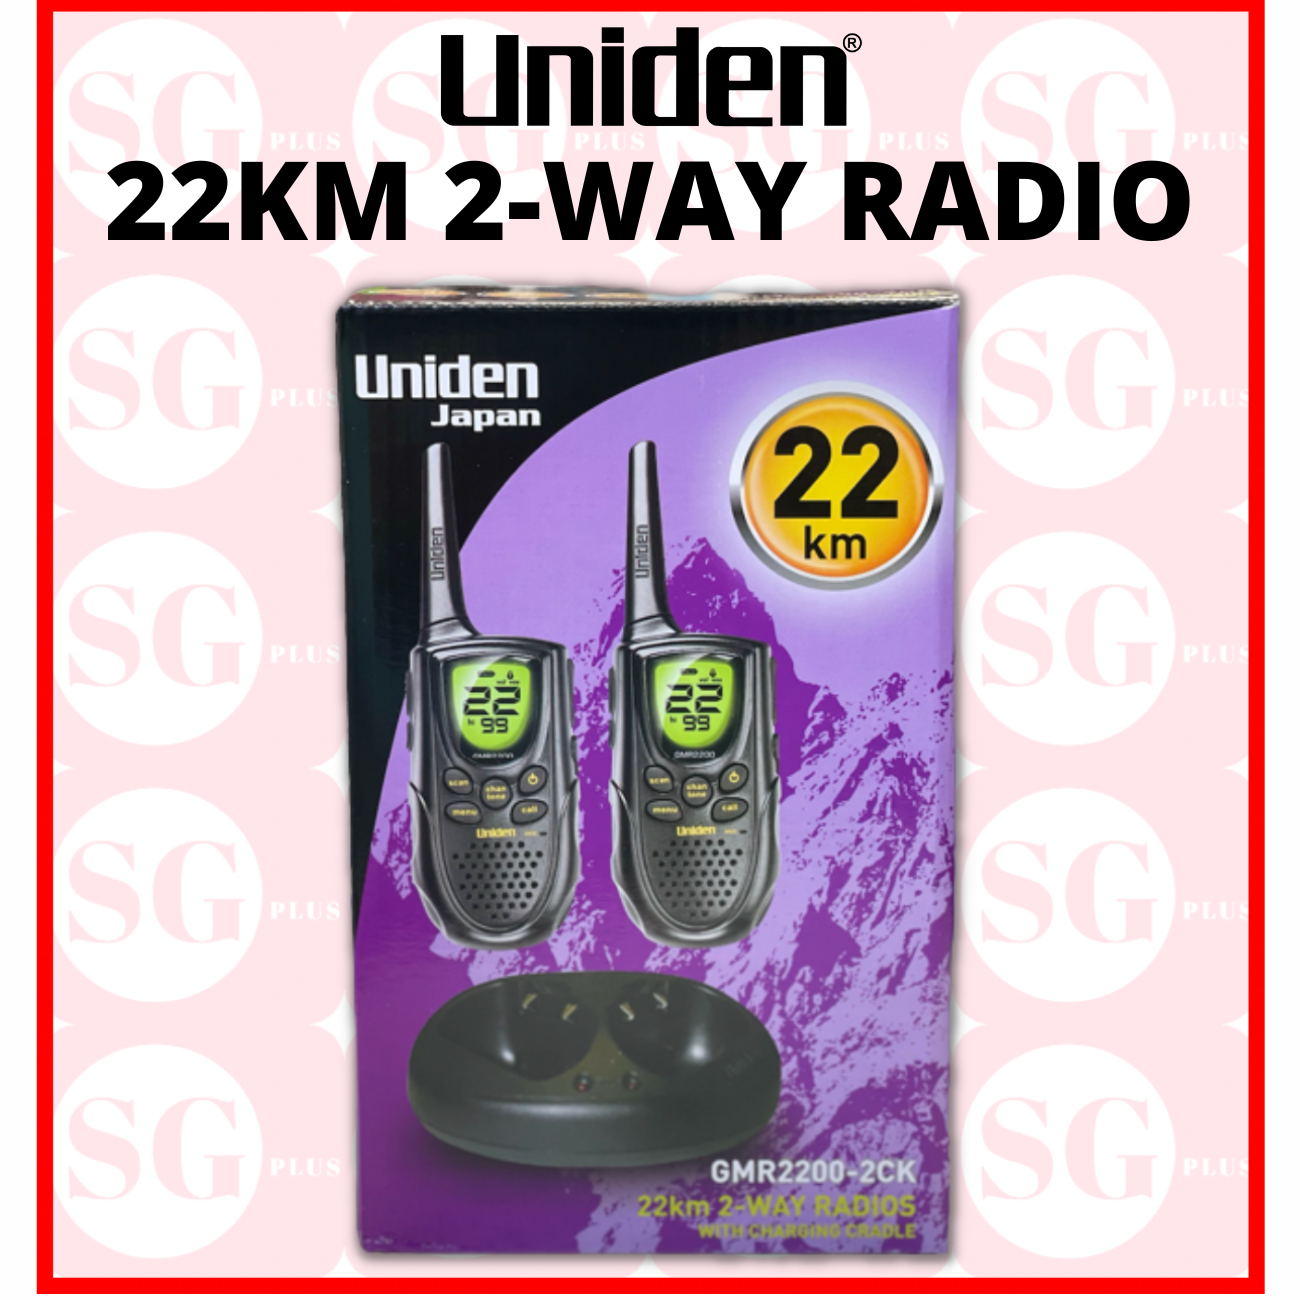 Two- Way Radios Uniden